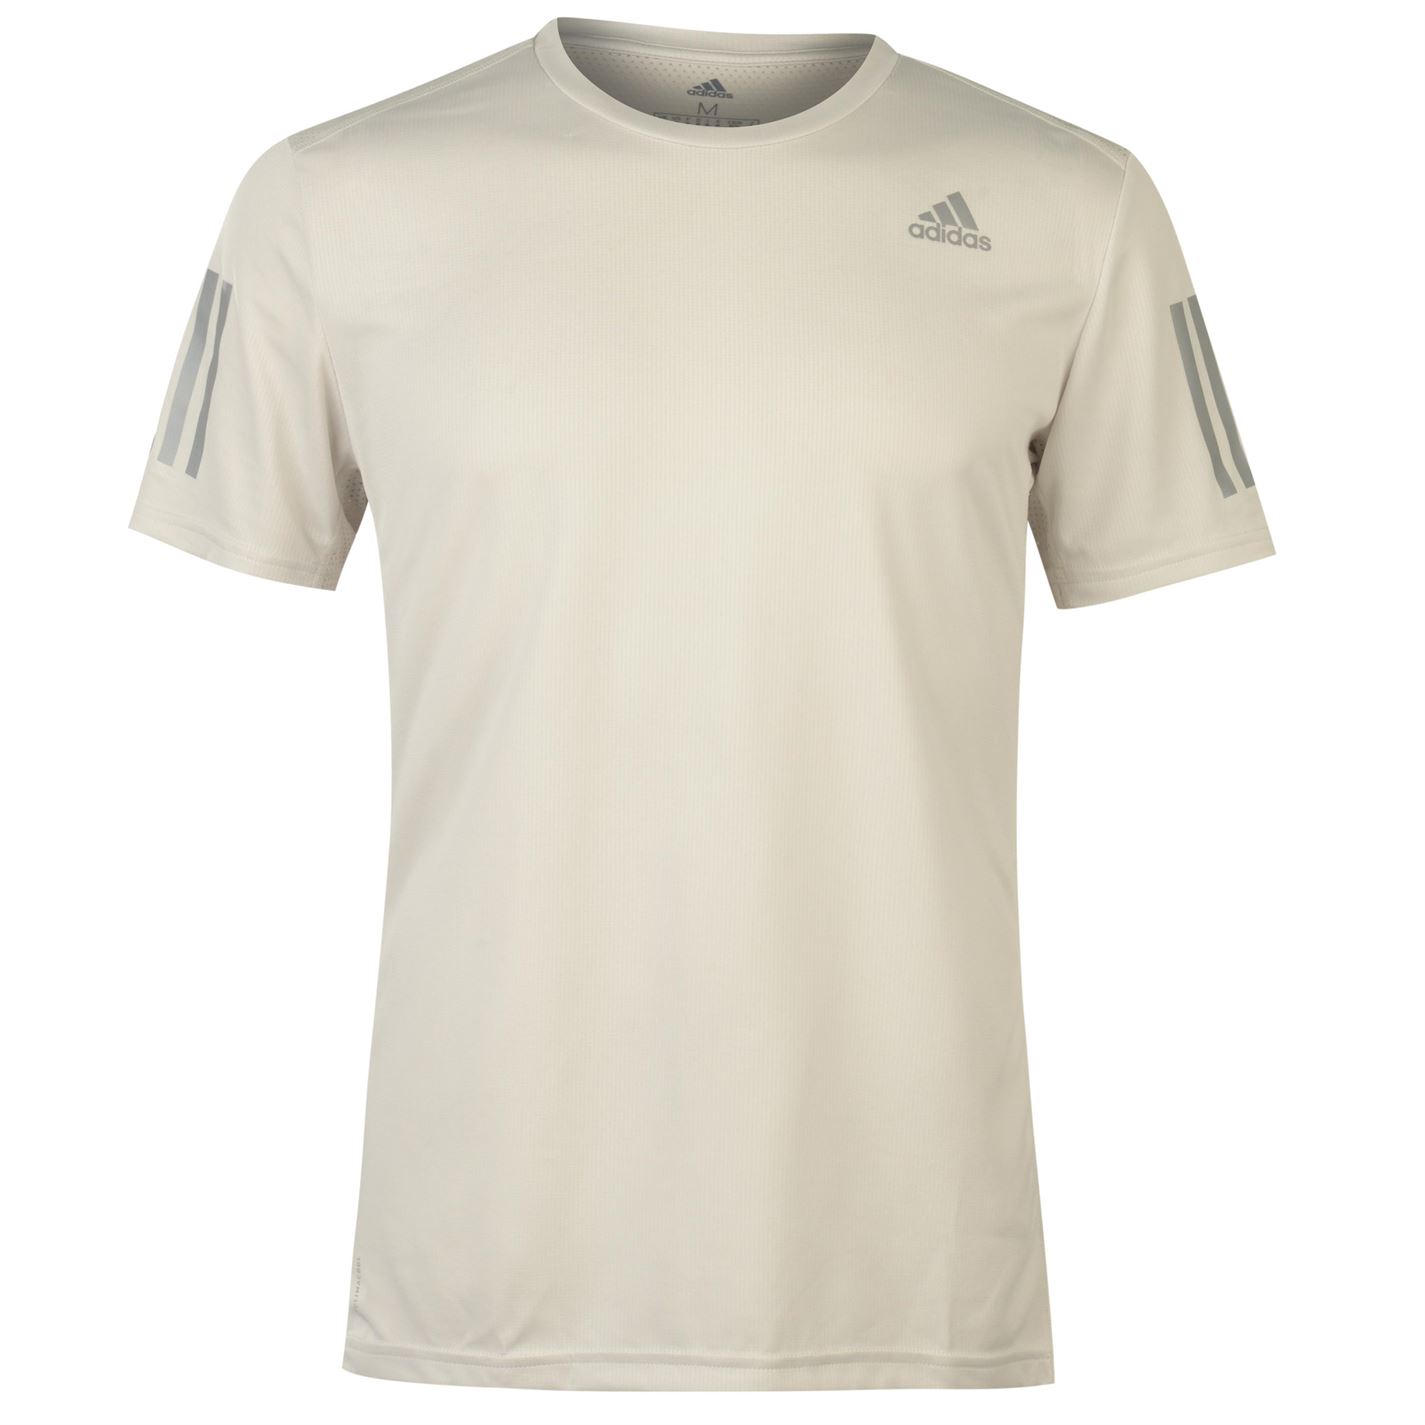 Adidas OTR Short Sleeve T Shirt Mens